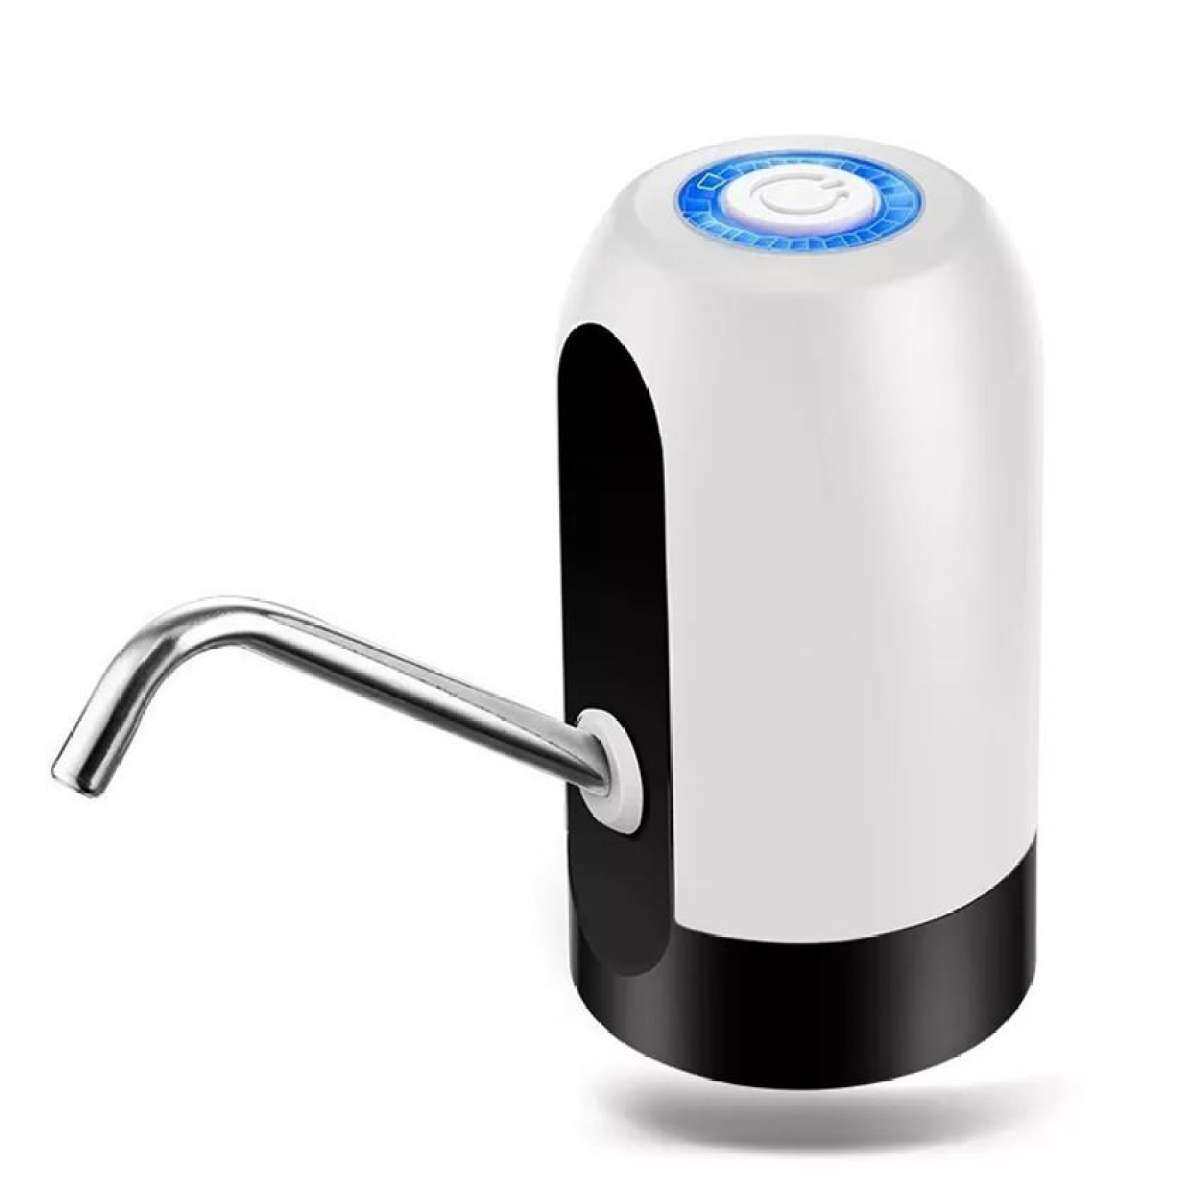 Home king ที่ปั๊มน้ำดื่มอัตโนมัต อุปกรณ์ปั้มน้ำดื่มจากแกลลอน ที่ปั้มน้ำดื่มจากแกลลอน แบบมือกด ไม่ใช้ไฟฟ้า Pump-Manual เครื่องกดน้ำอัตโนมัติ เค